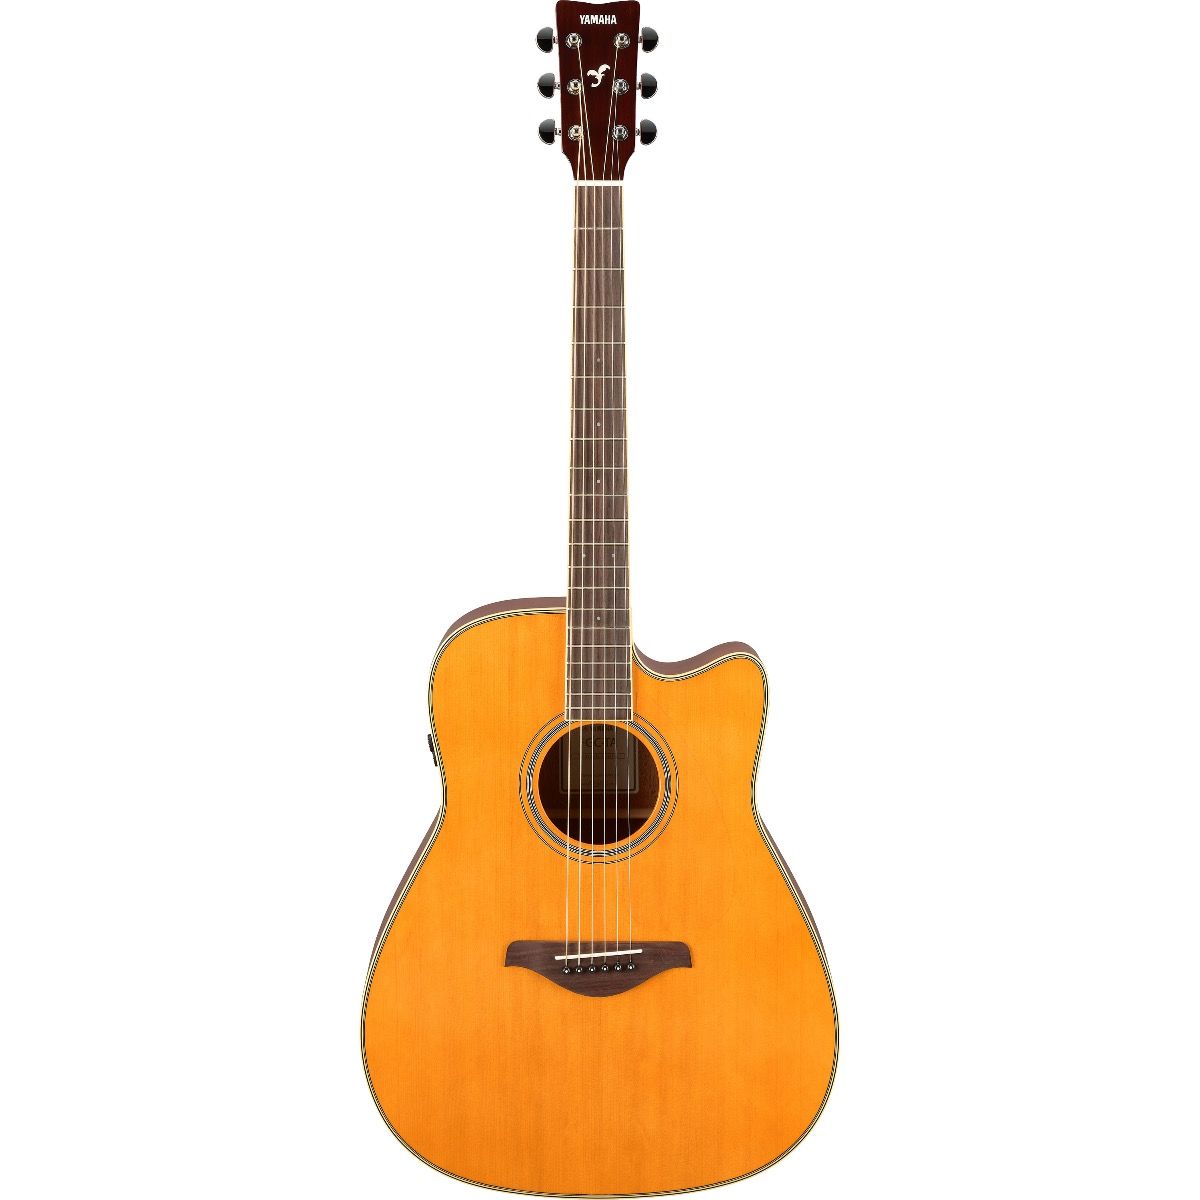 Billede af Yamaha FGC TransAcoustic Western Guitar (Vintage)